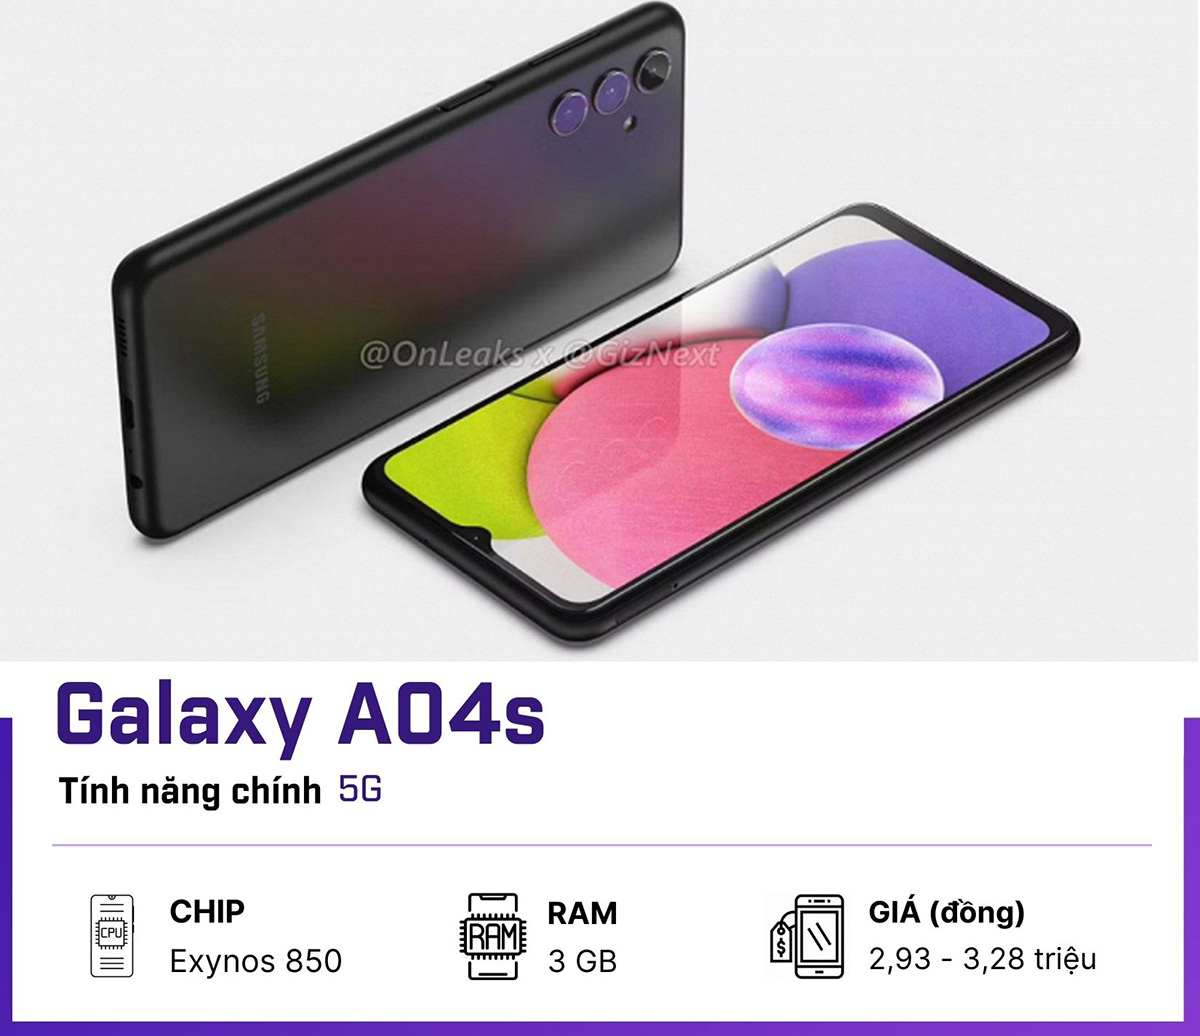 Galaxy A04s 5G sẽ là đòn giáng mạnh của Samsung cho các đối thủ Trung Quốc - 1